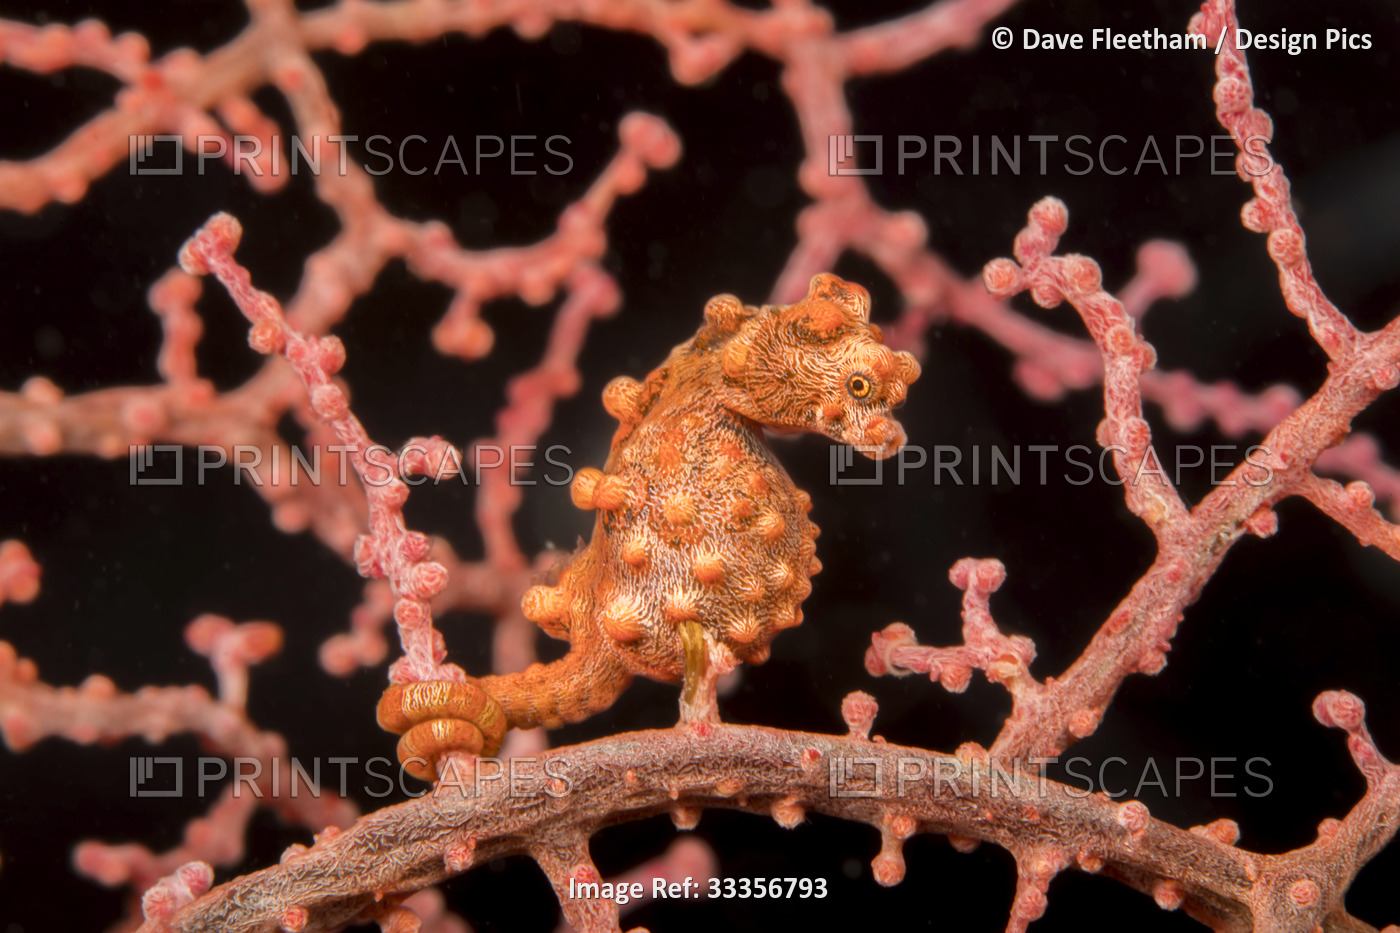 Pygmy seahorse (Hippocampus bargibanti), also known as Bargibant's pygmy ...